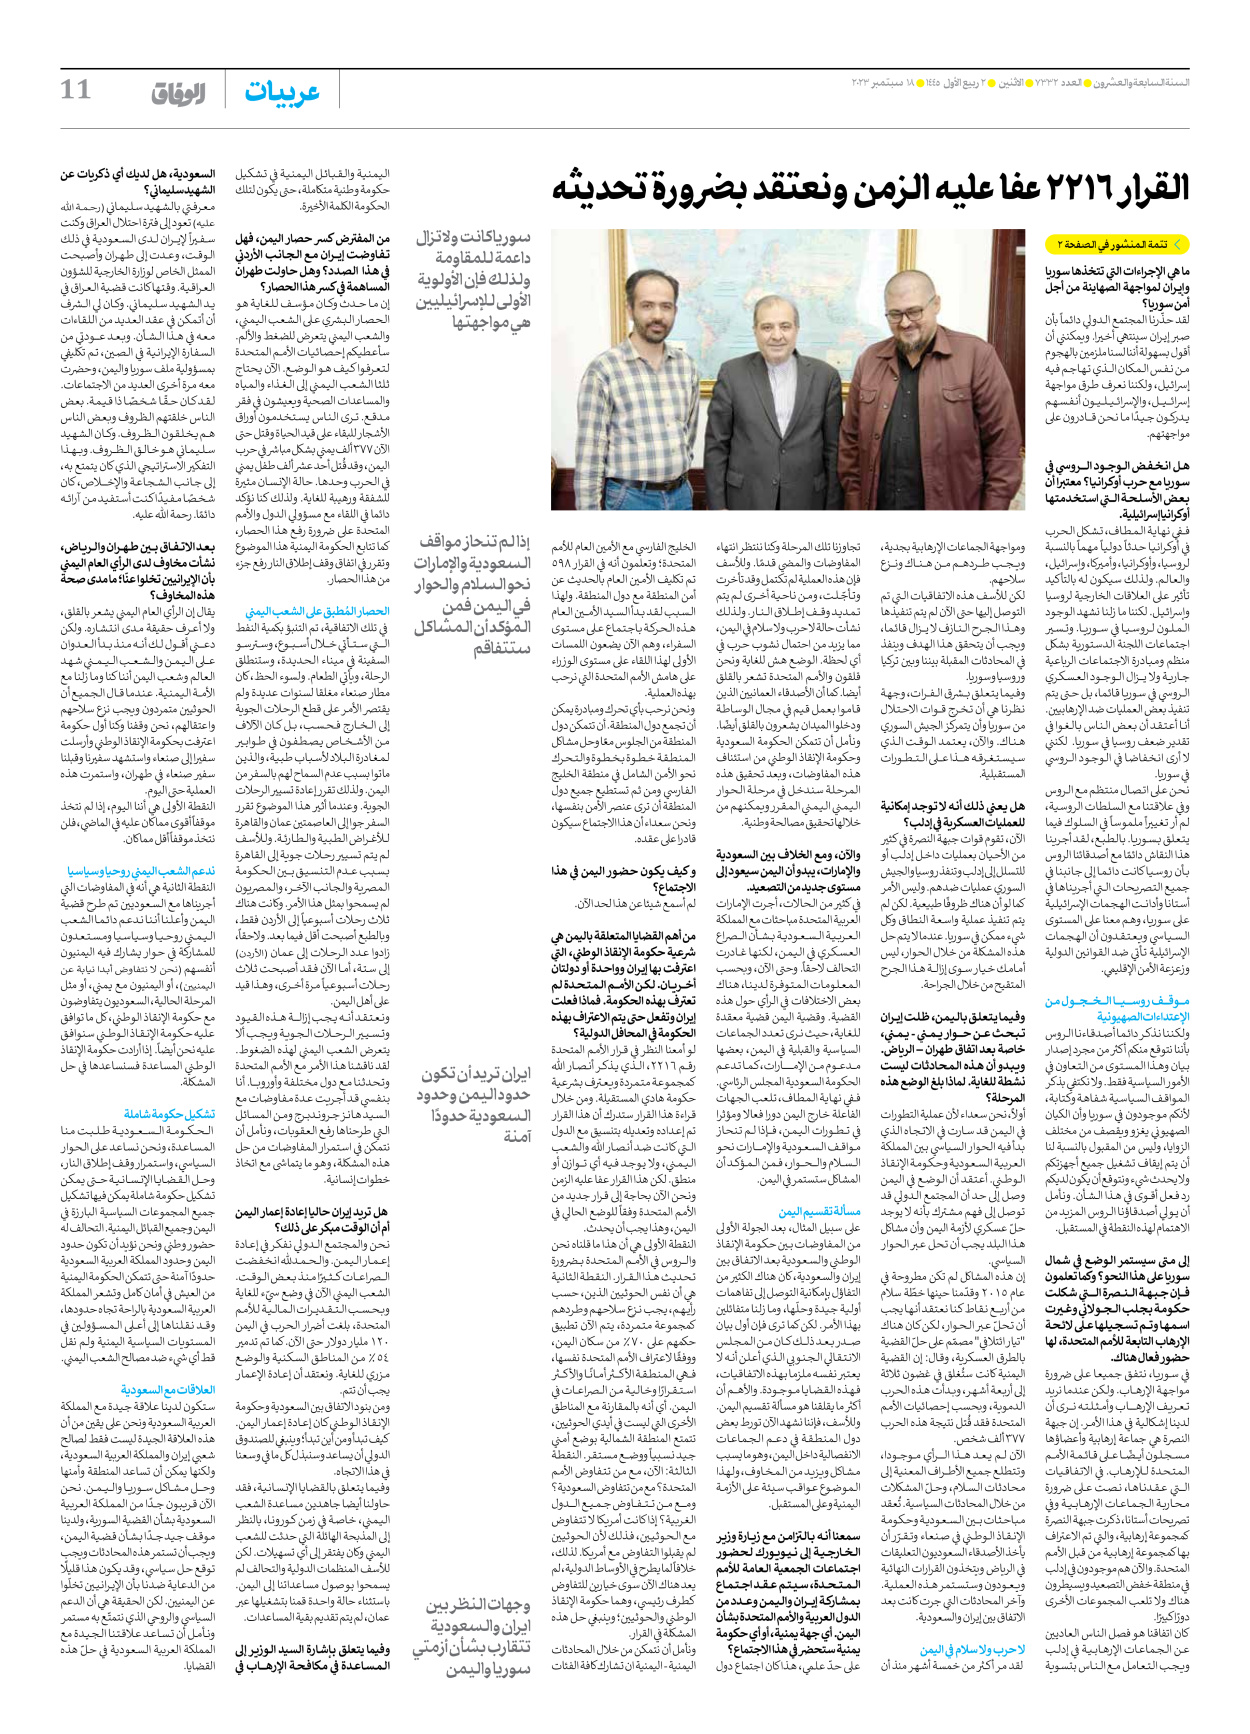 صحیفة ایران الدولیة الوفاق - العدد سبعة آلاف وثلاثمائة واثنان وثلاثون - ١٨ سبتمبر ٢٠٢٣ - الصفحة ۱۱